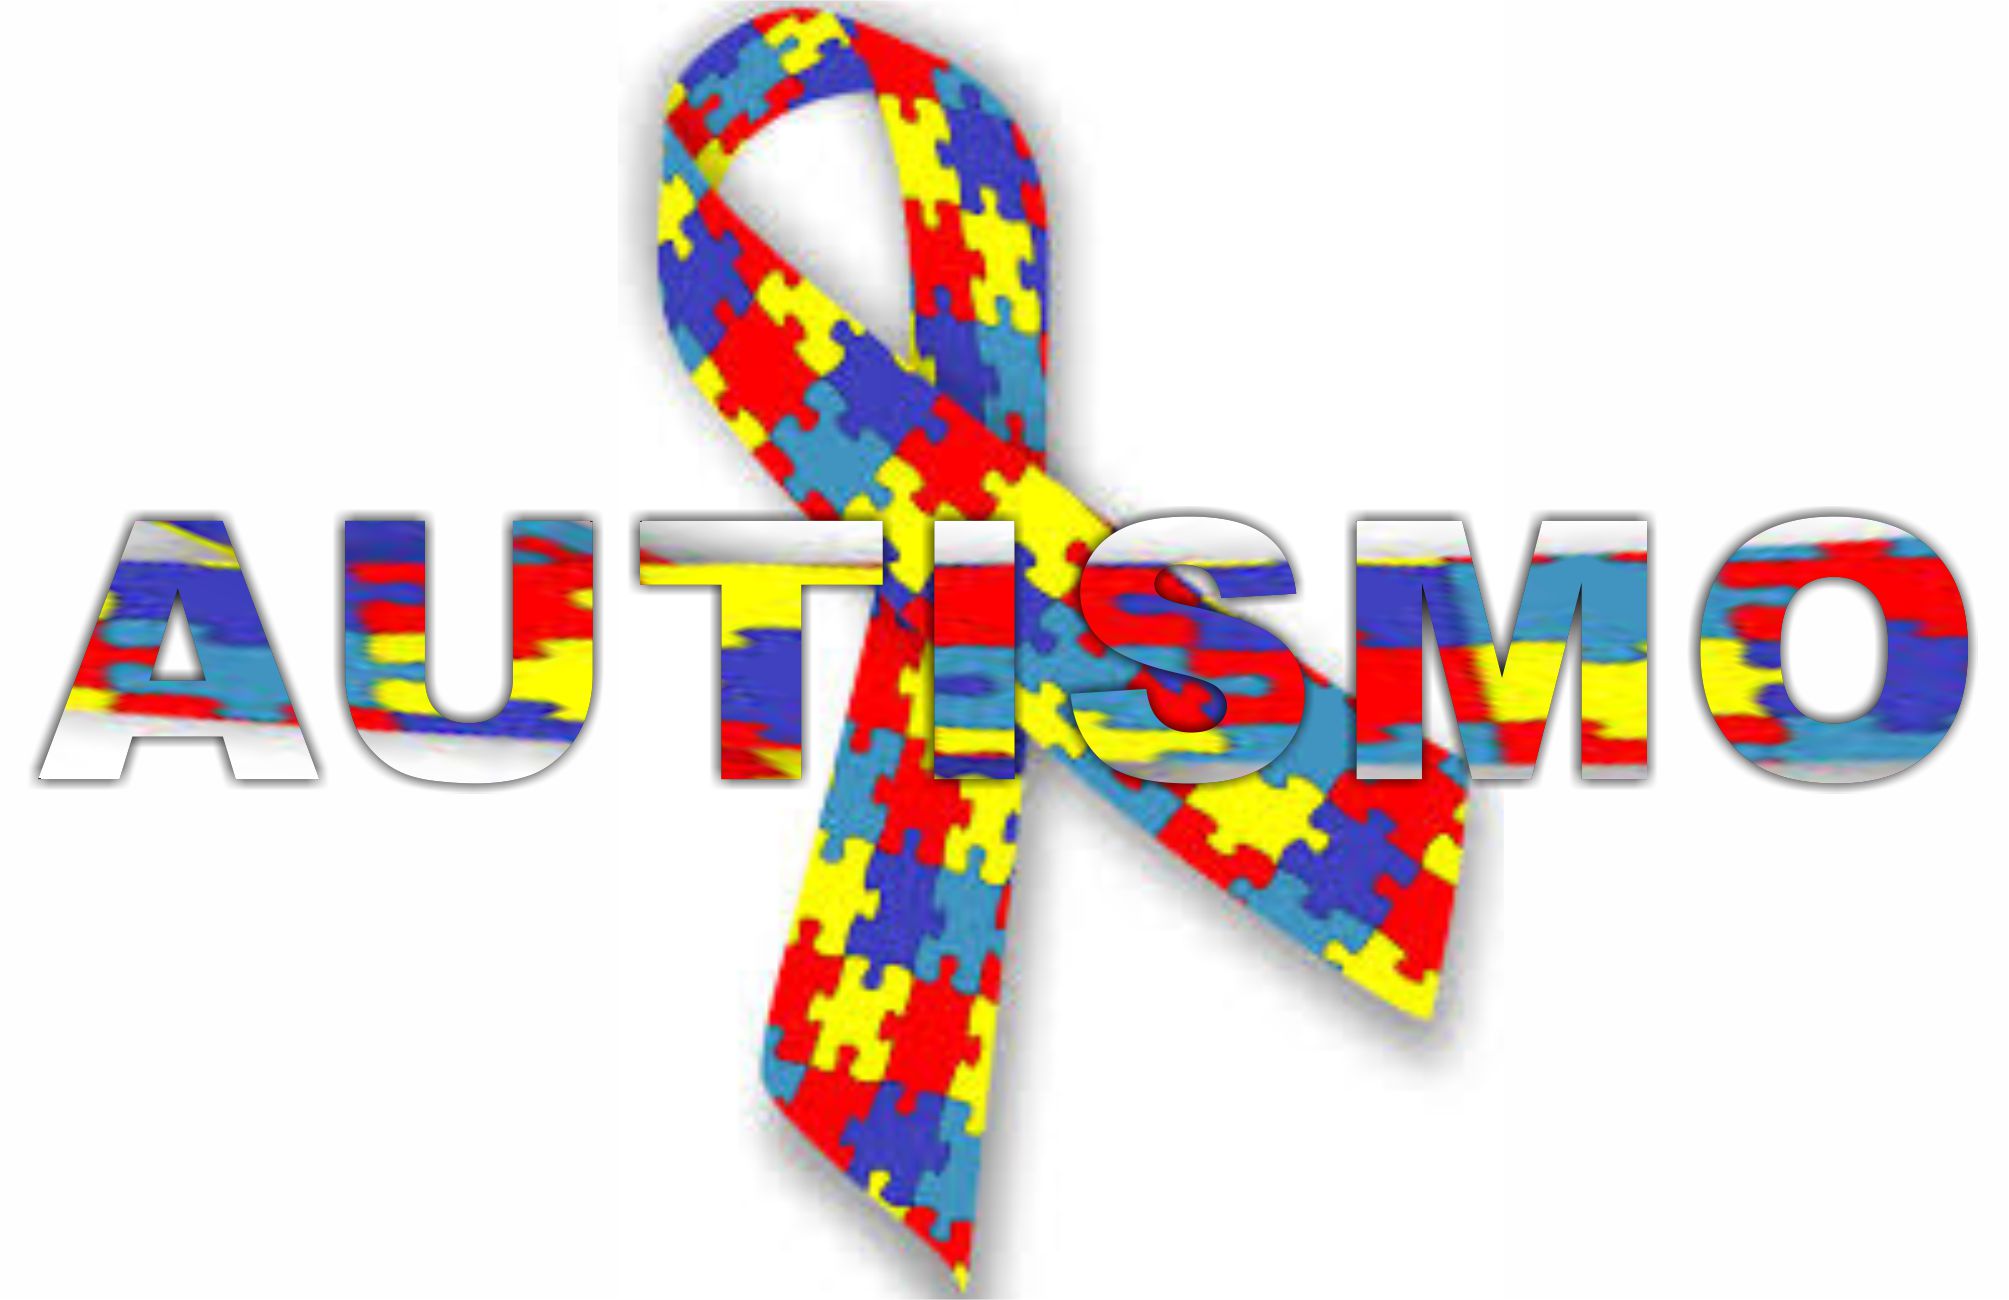 Charla del Dr. Plebst “Comprensión integral del autismo. Bases biopsicosociales para el diseño de abordajes”